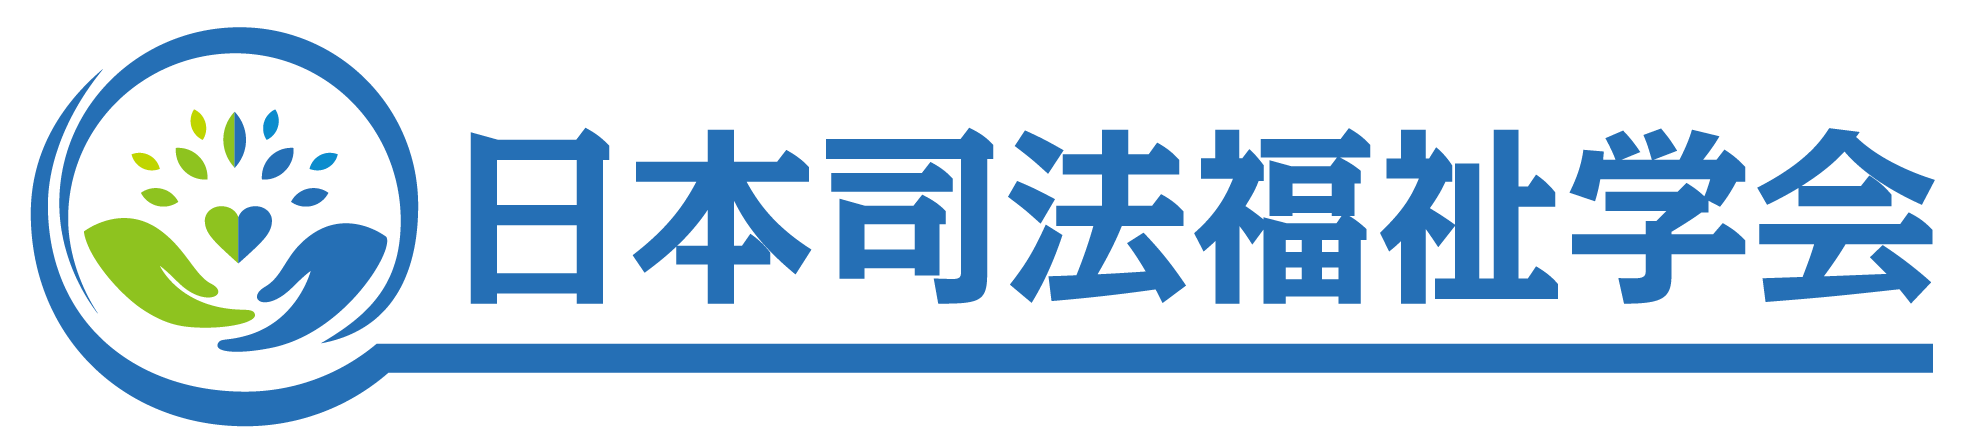 日本司法福祉学会オンラインフォーラム